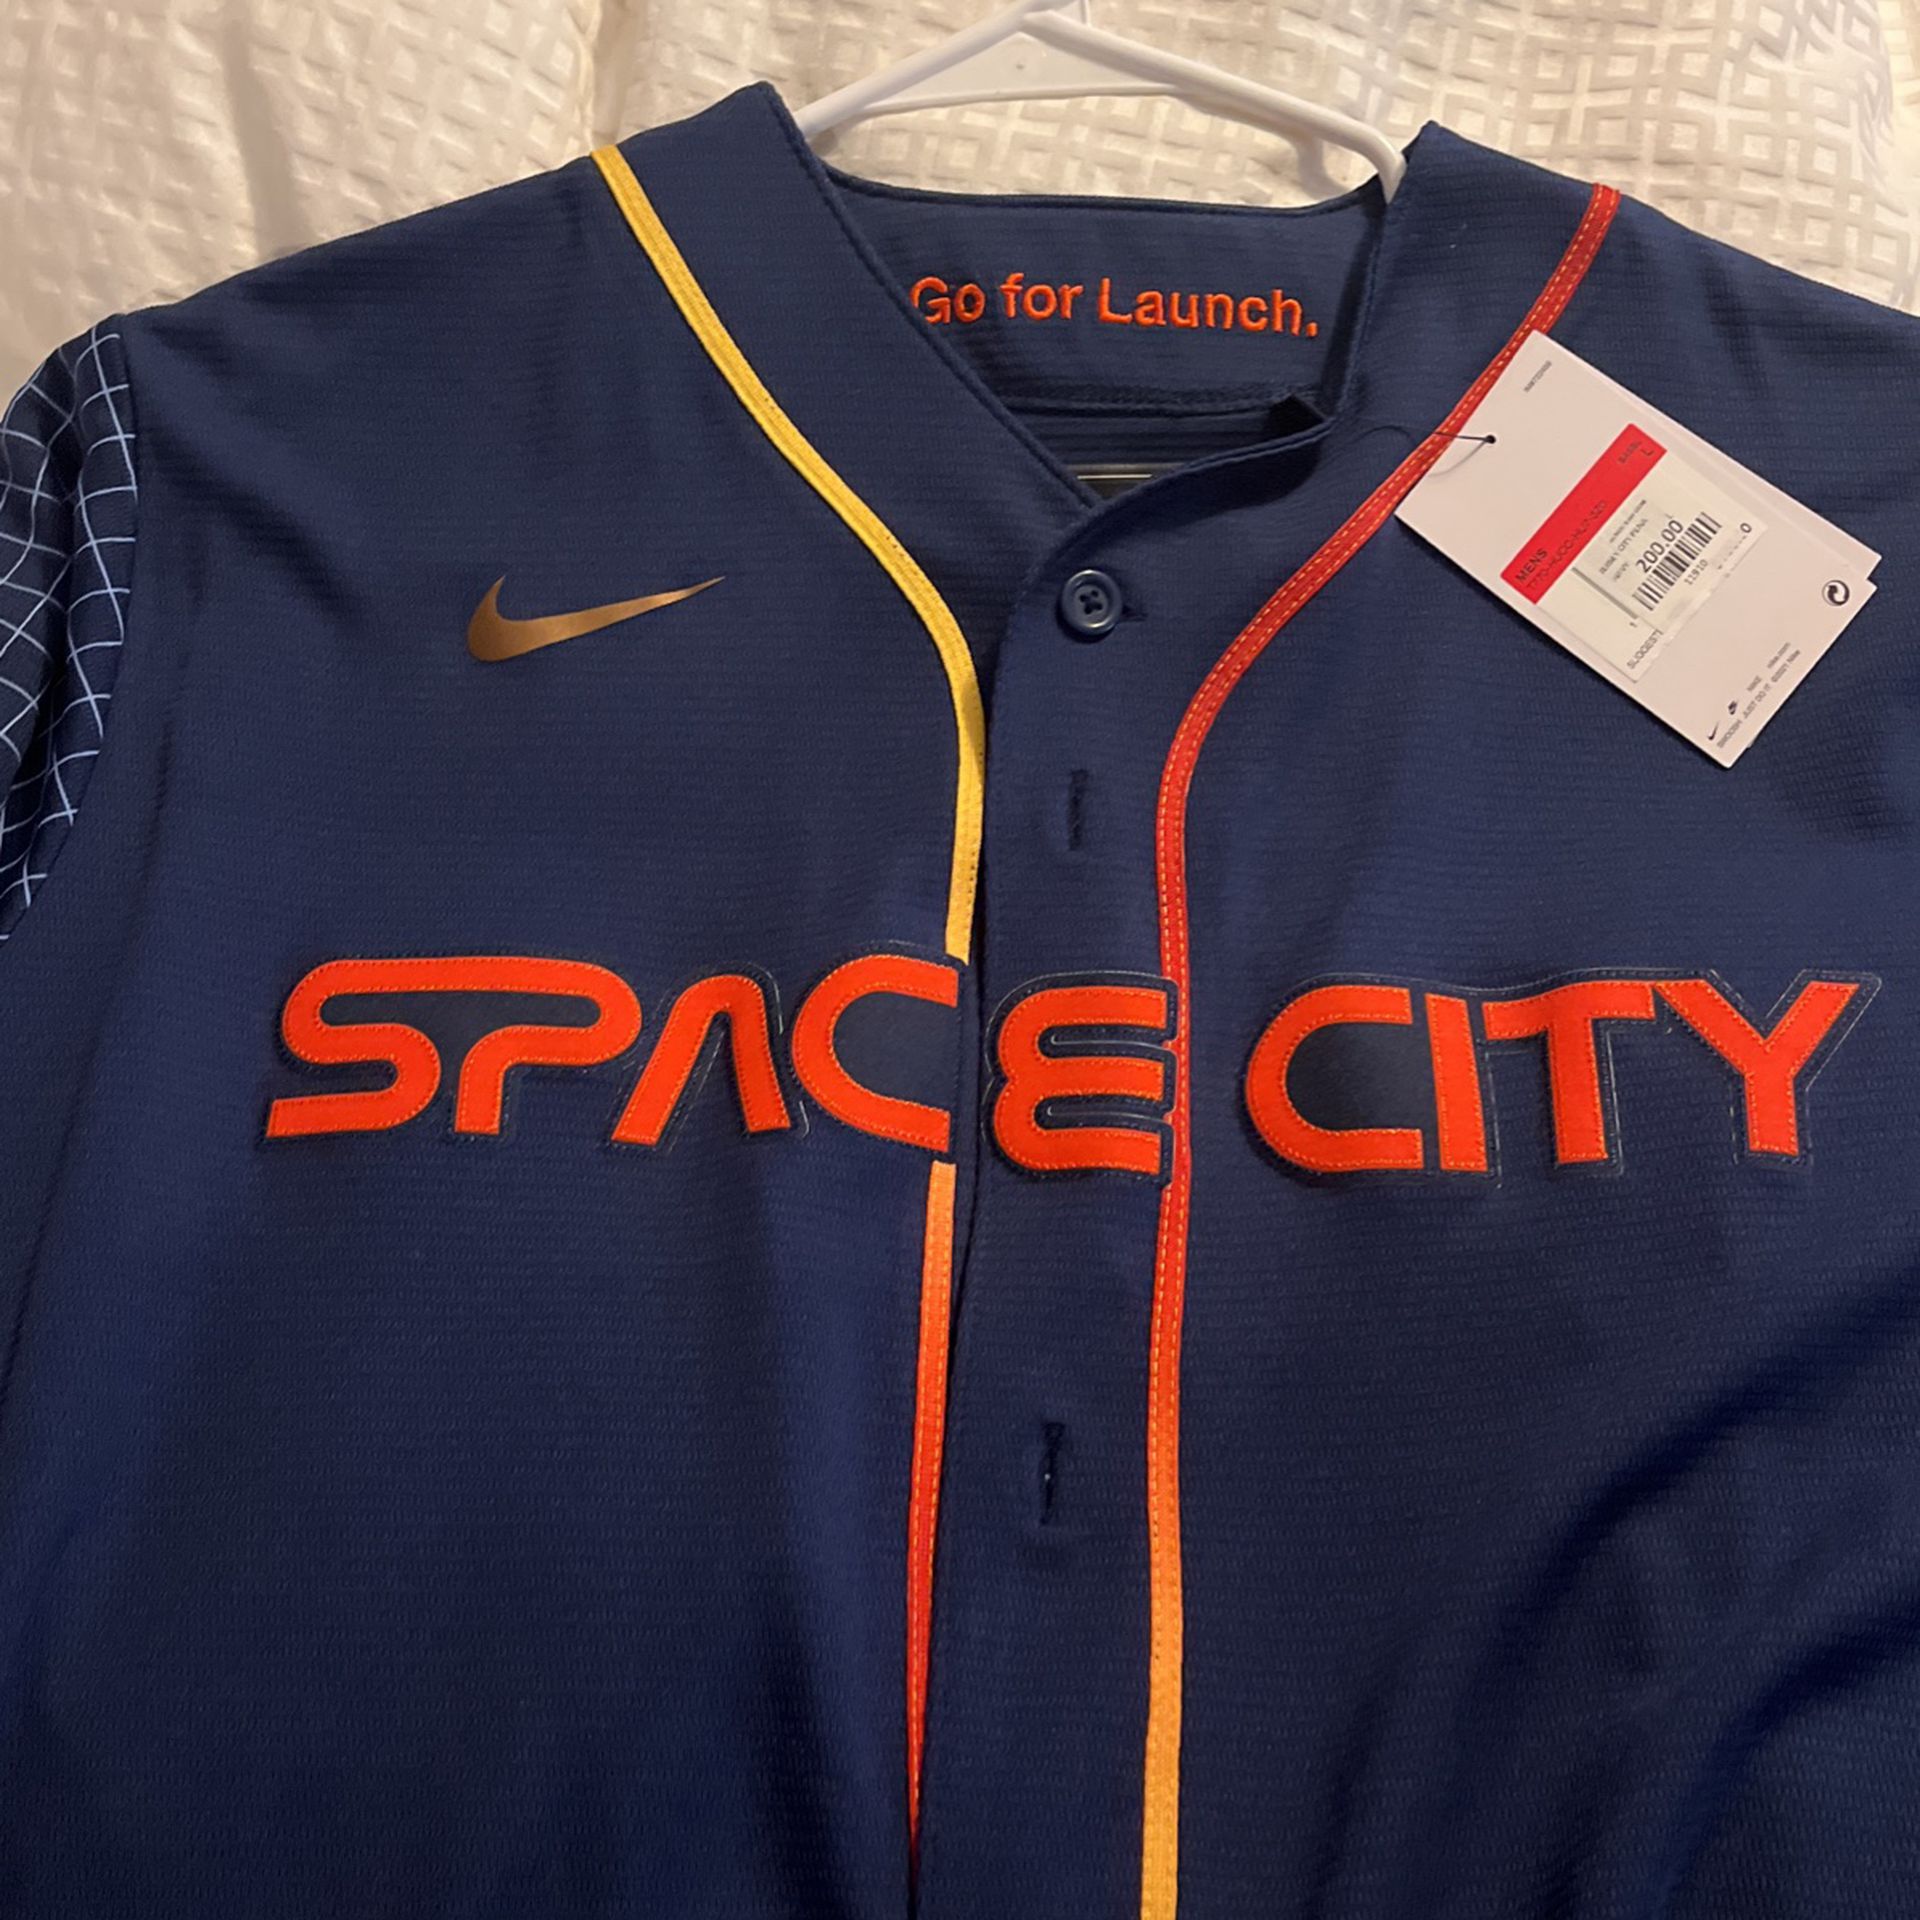 astros space city jerseys